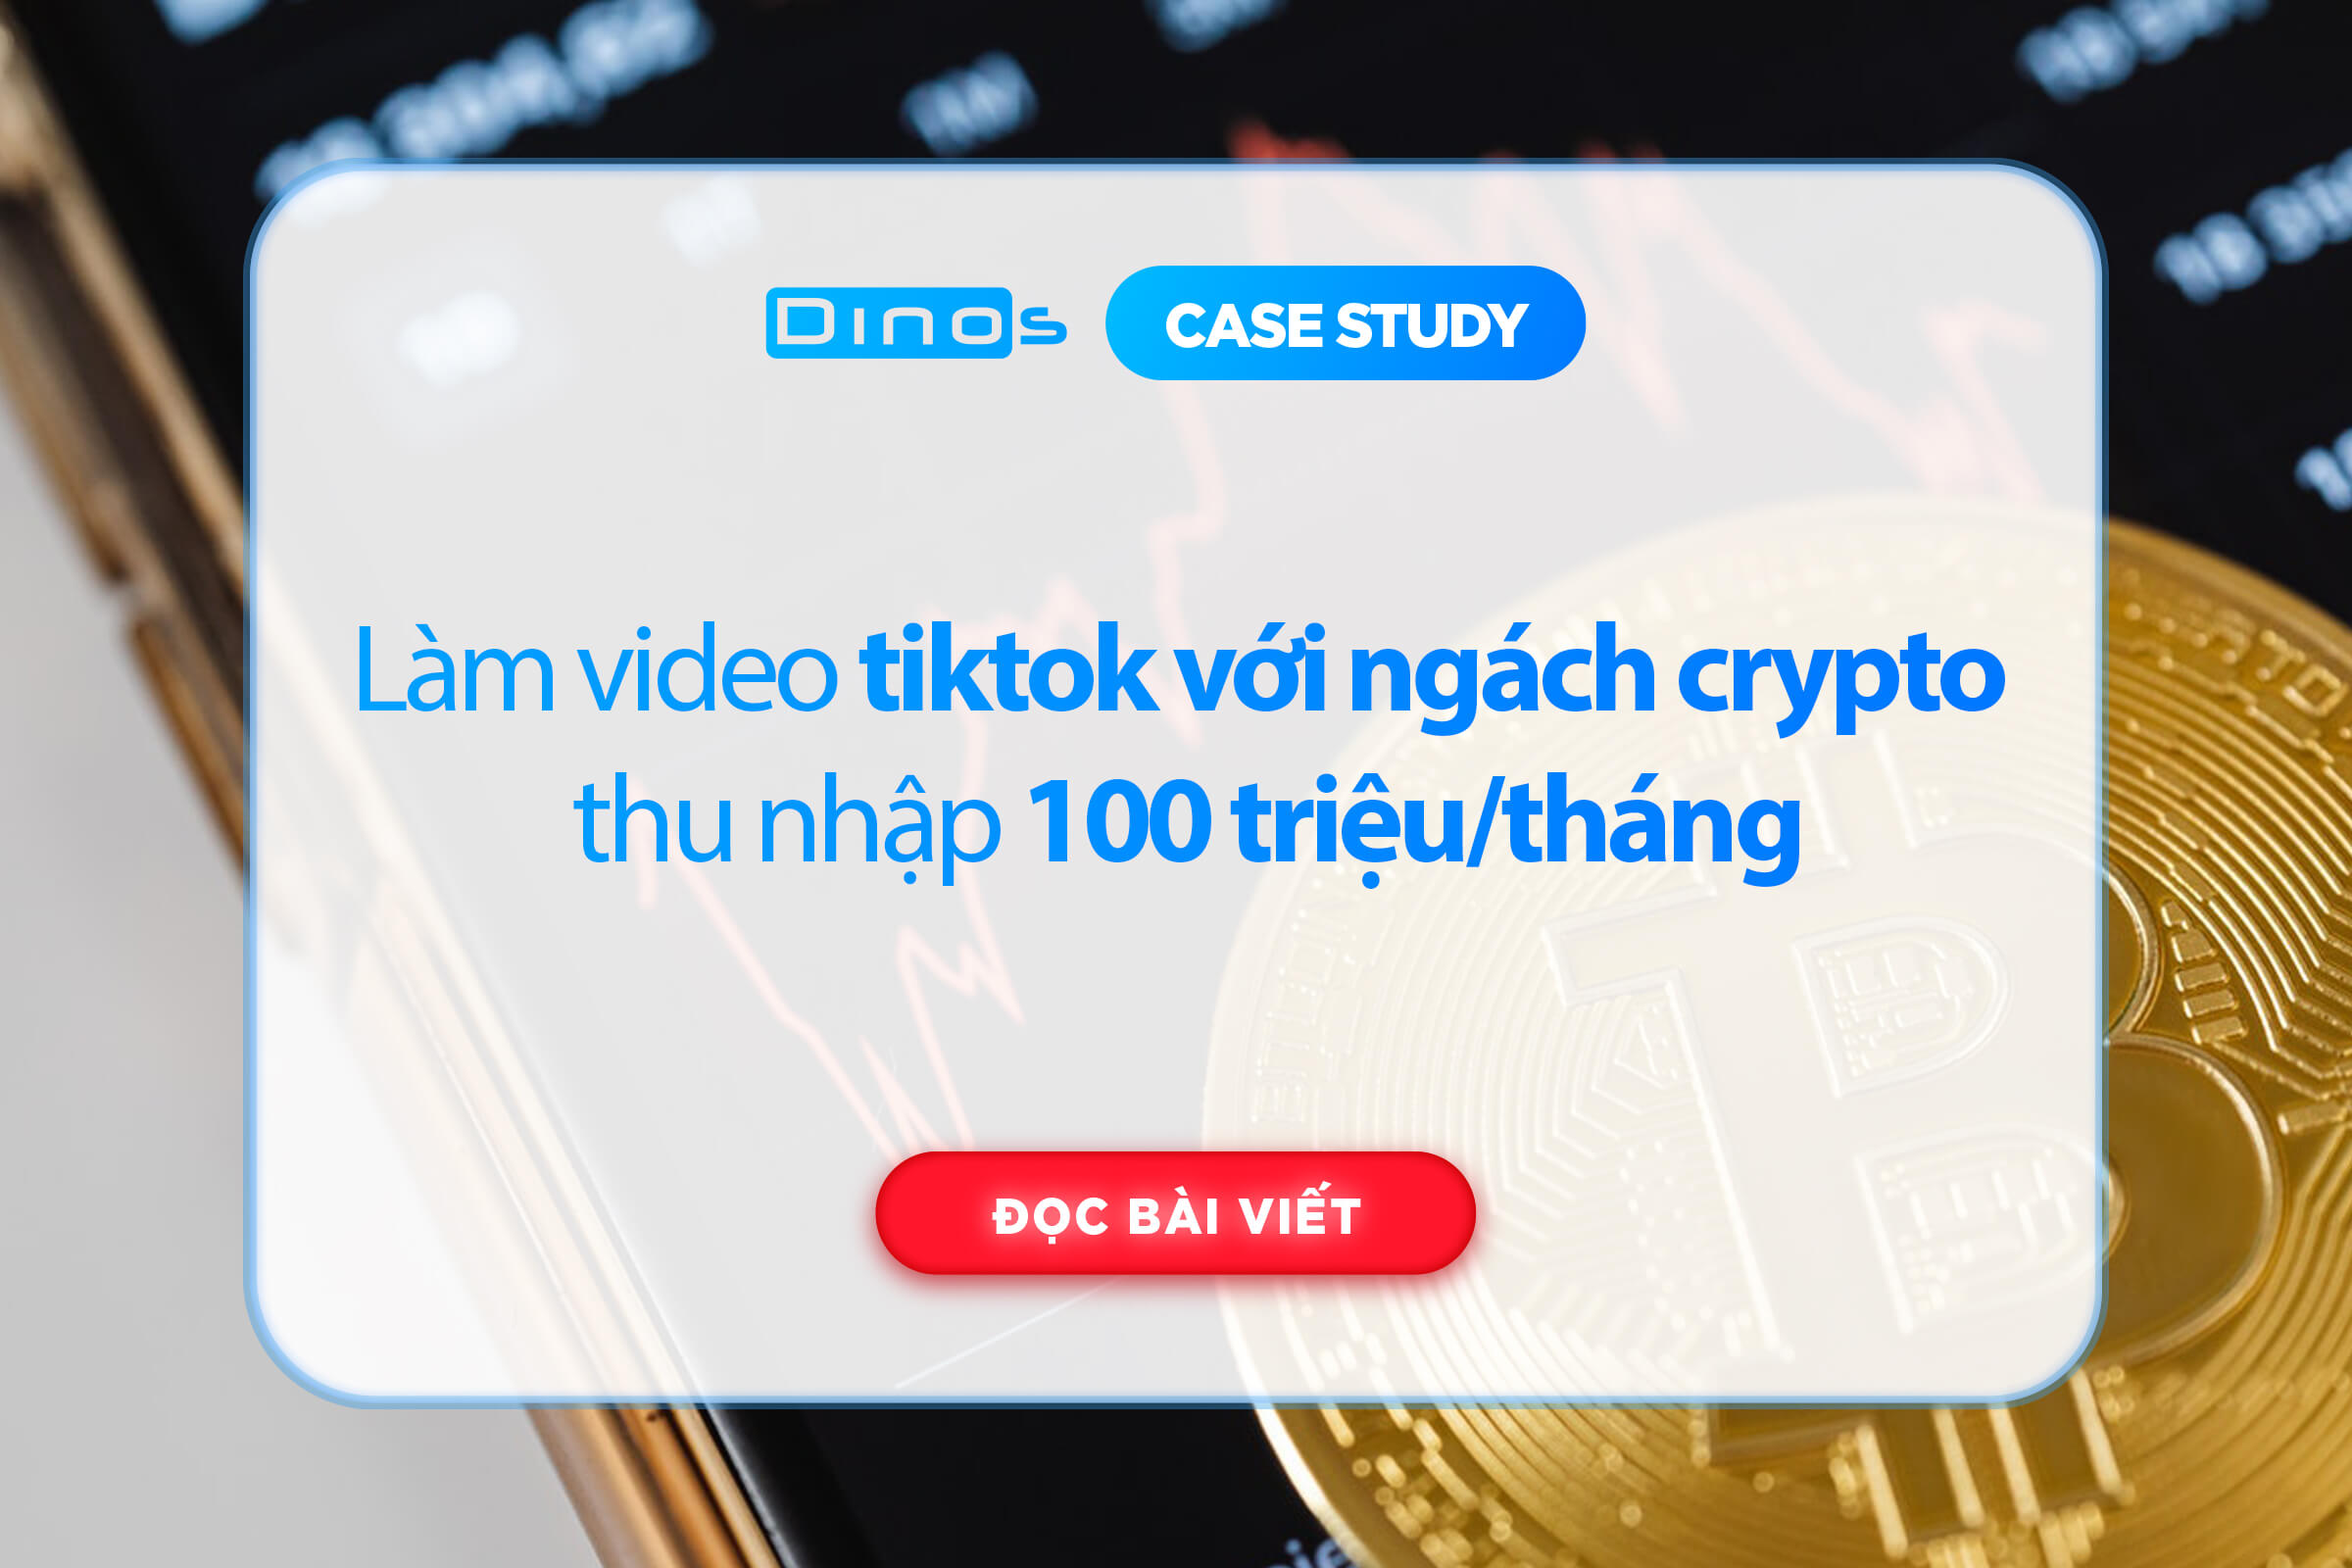 Làm video tiktok với ngách crypto thu nhập 100 triệu/tháng